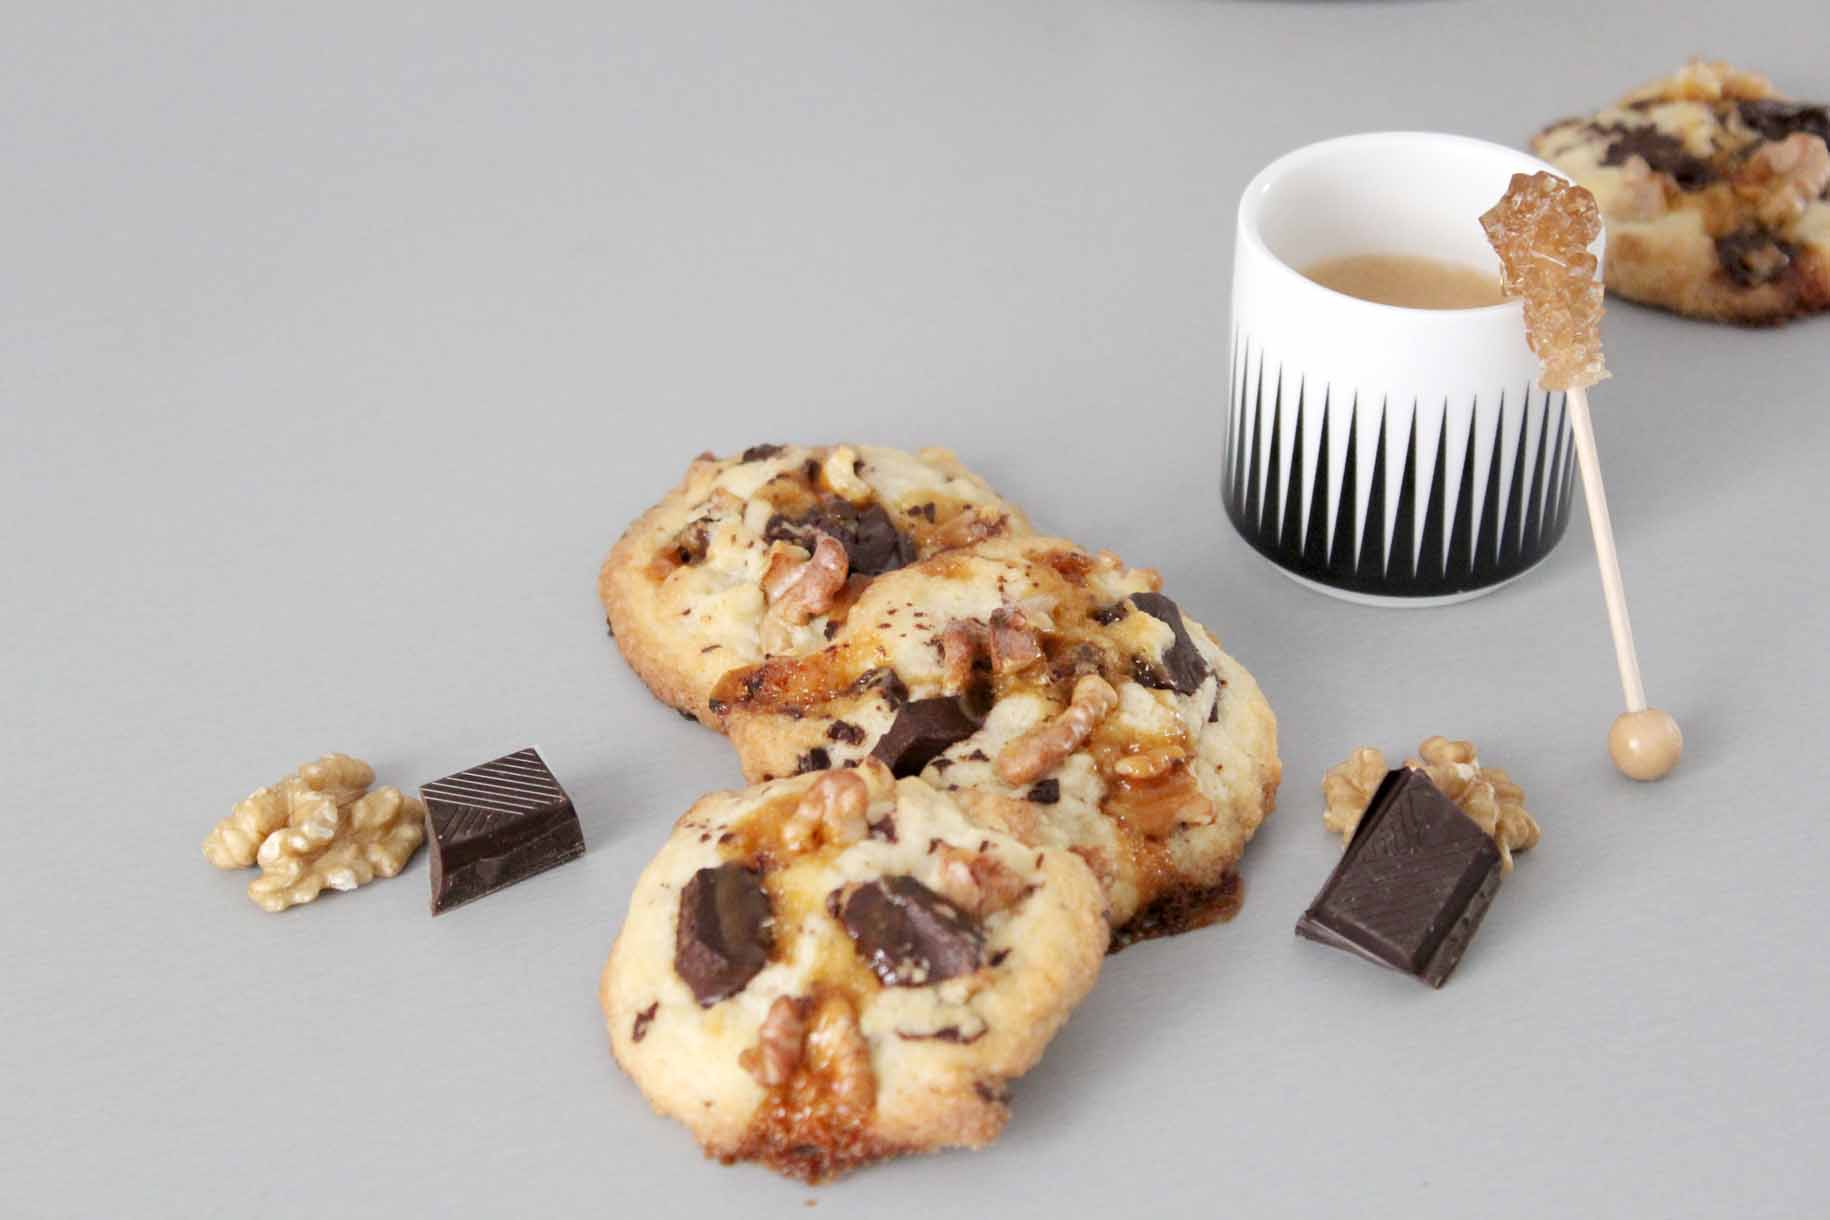 Cookies par Esperluette